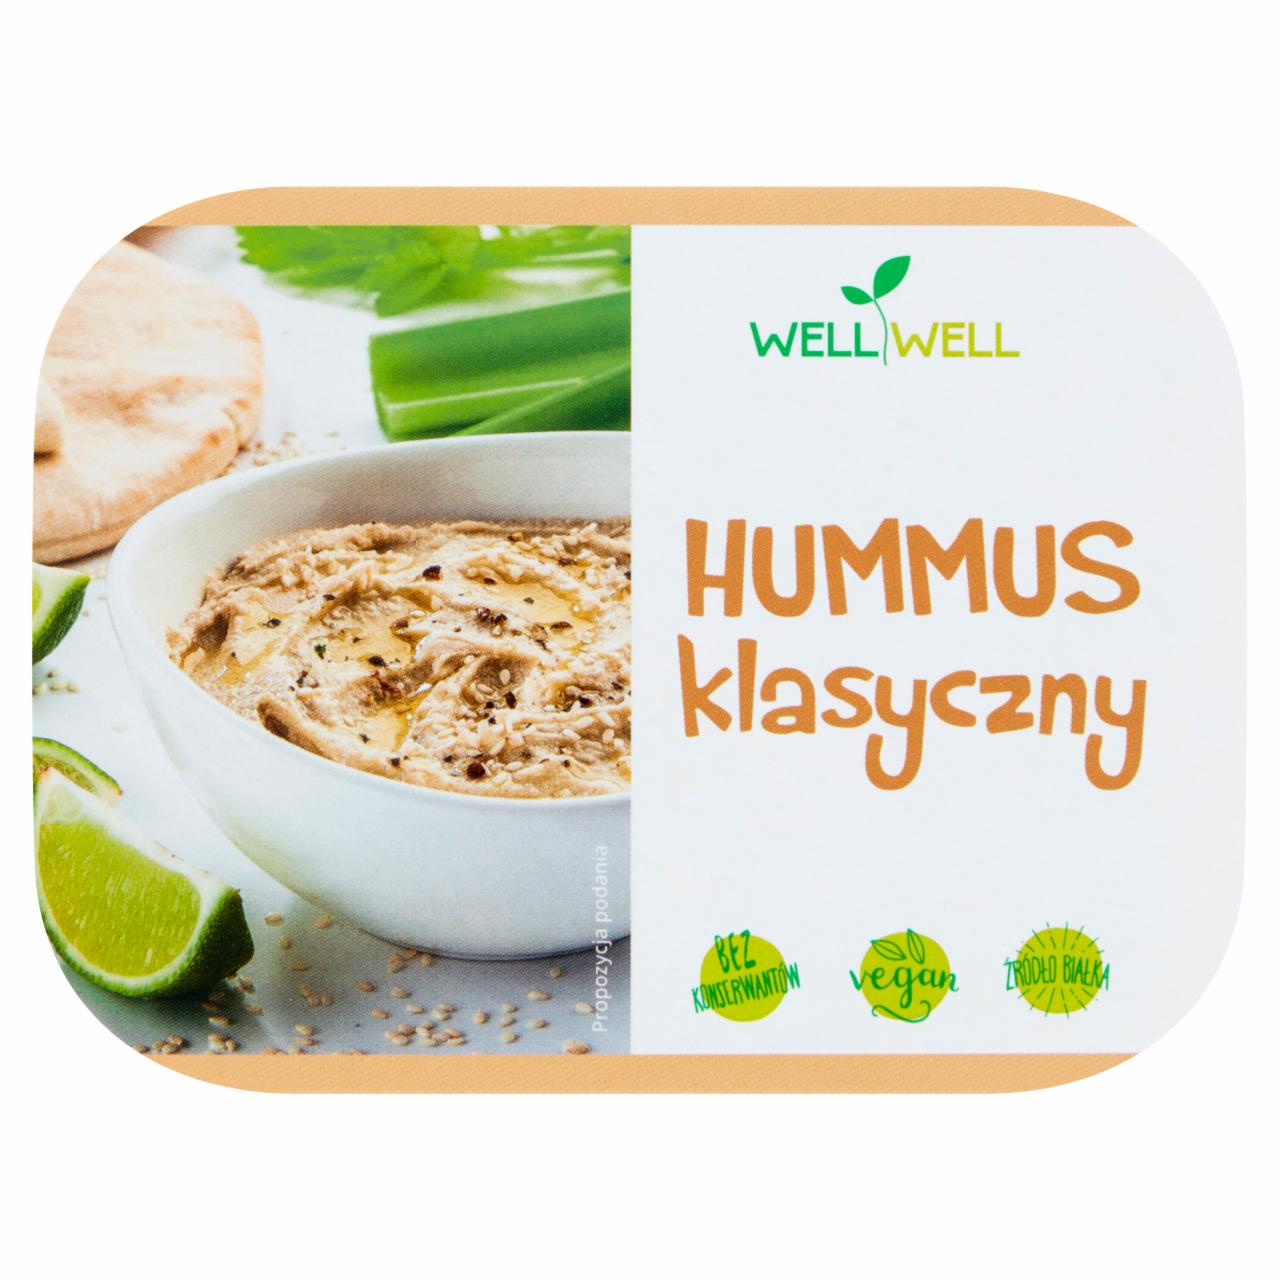 Zdjęcia - Well Well Hummus klasyczny 150 g